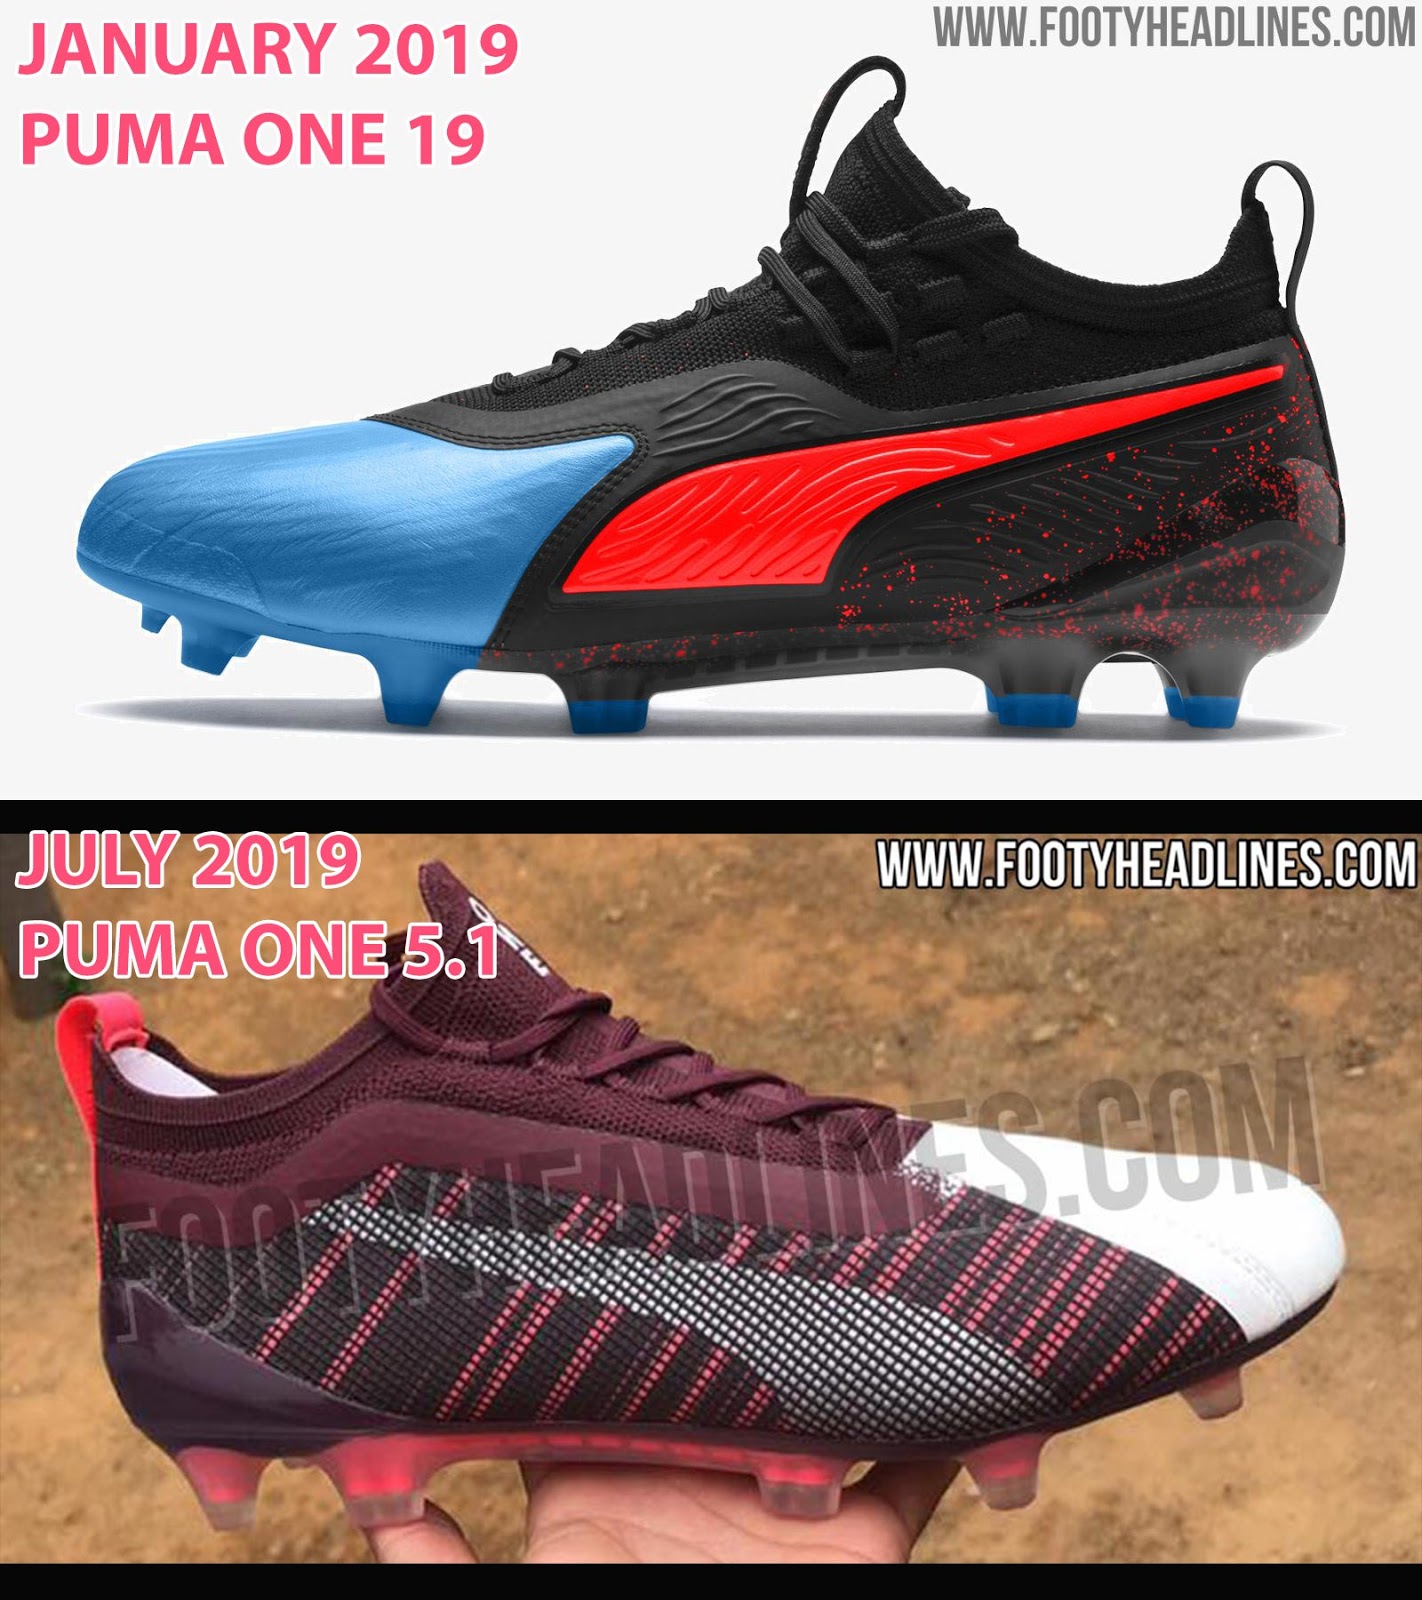 new puma football boots 2019